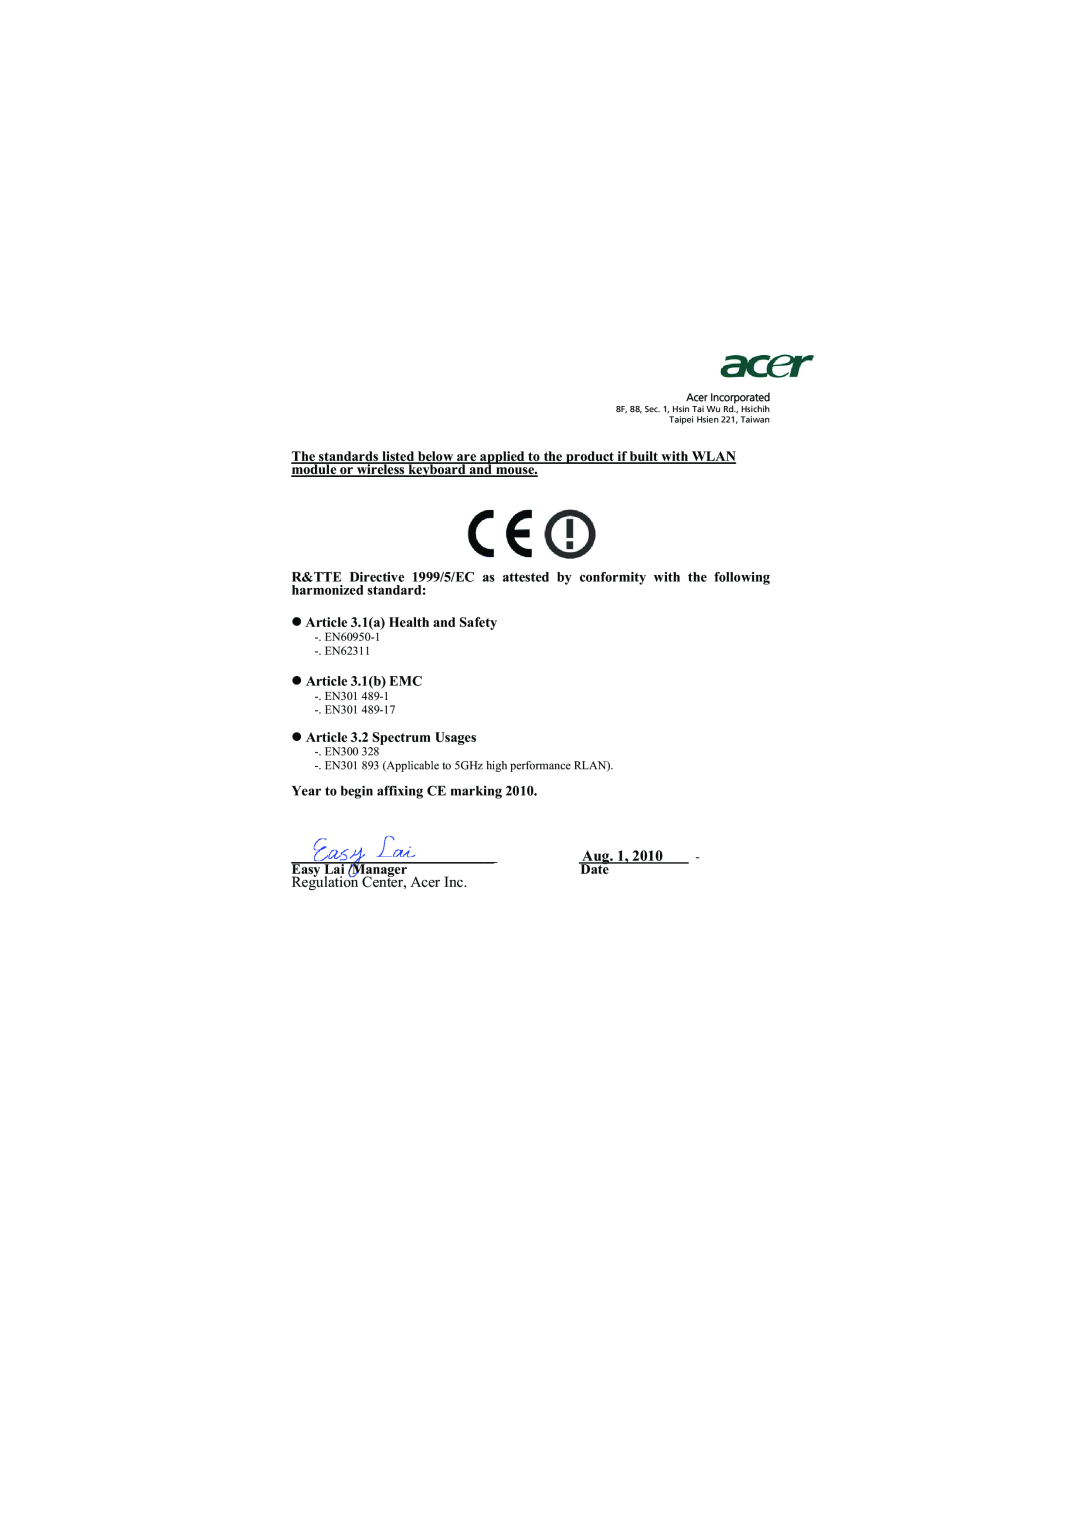 Acer H7531D manual Aug. 1, Regulation Center, Acer Inc 